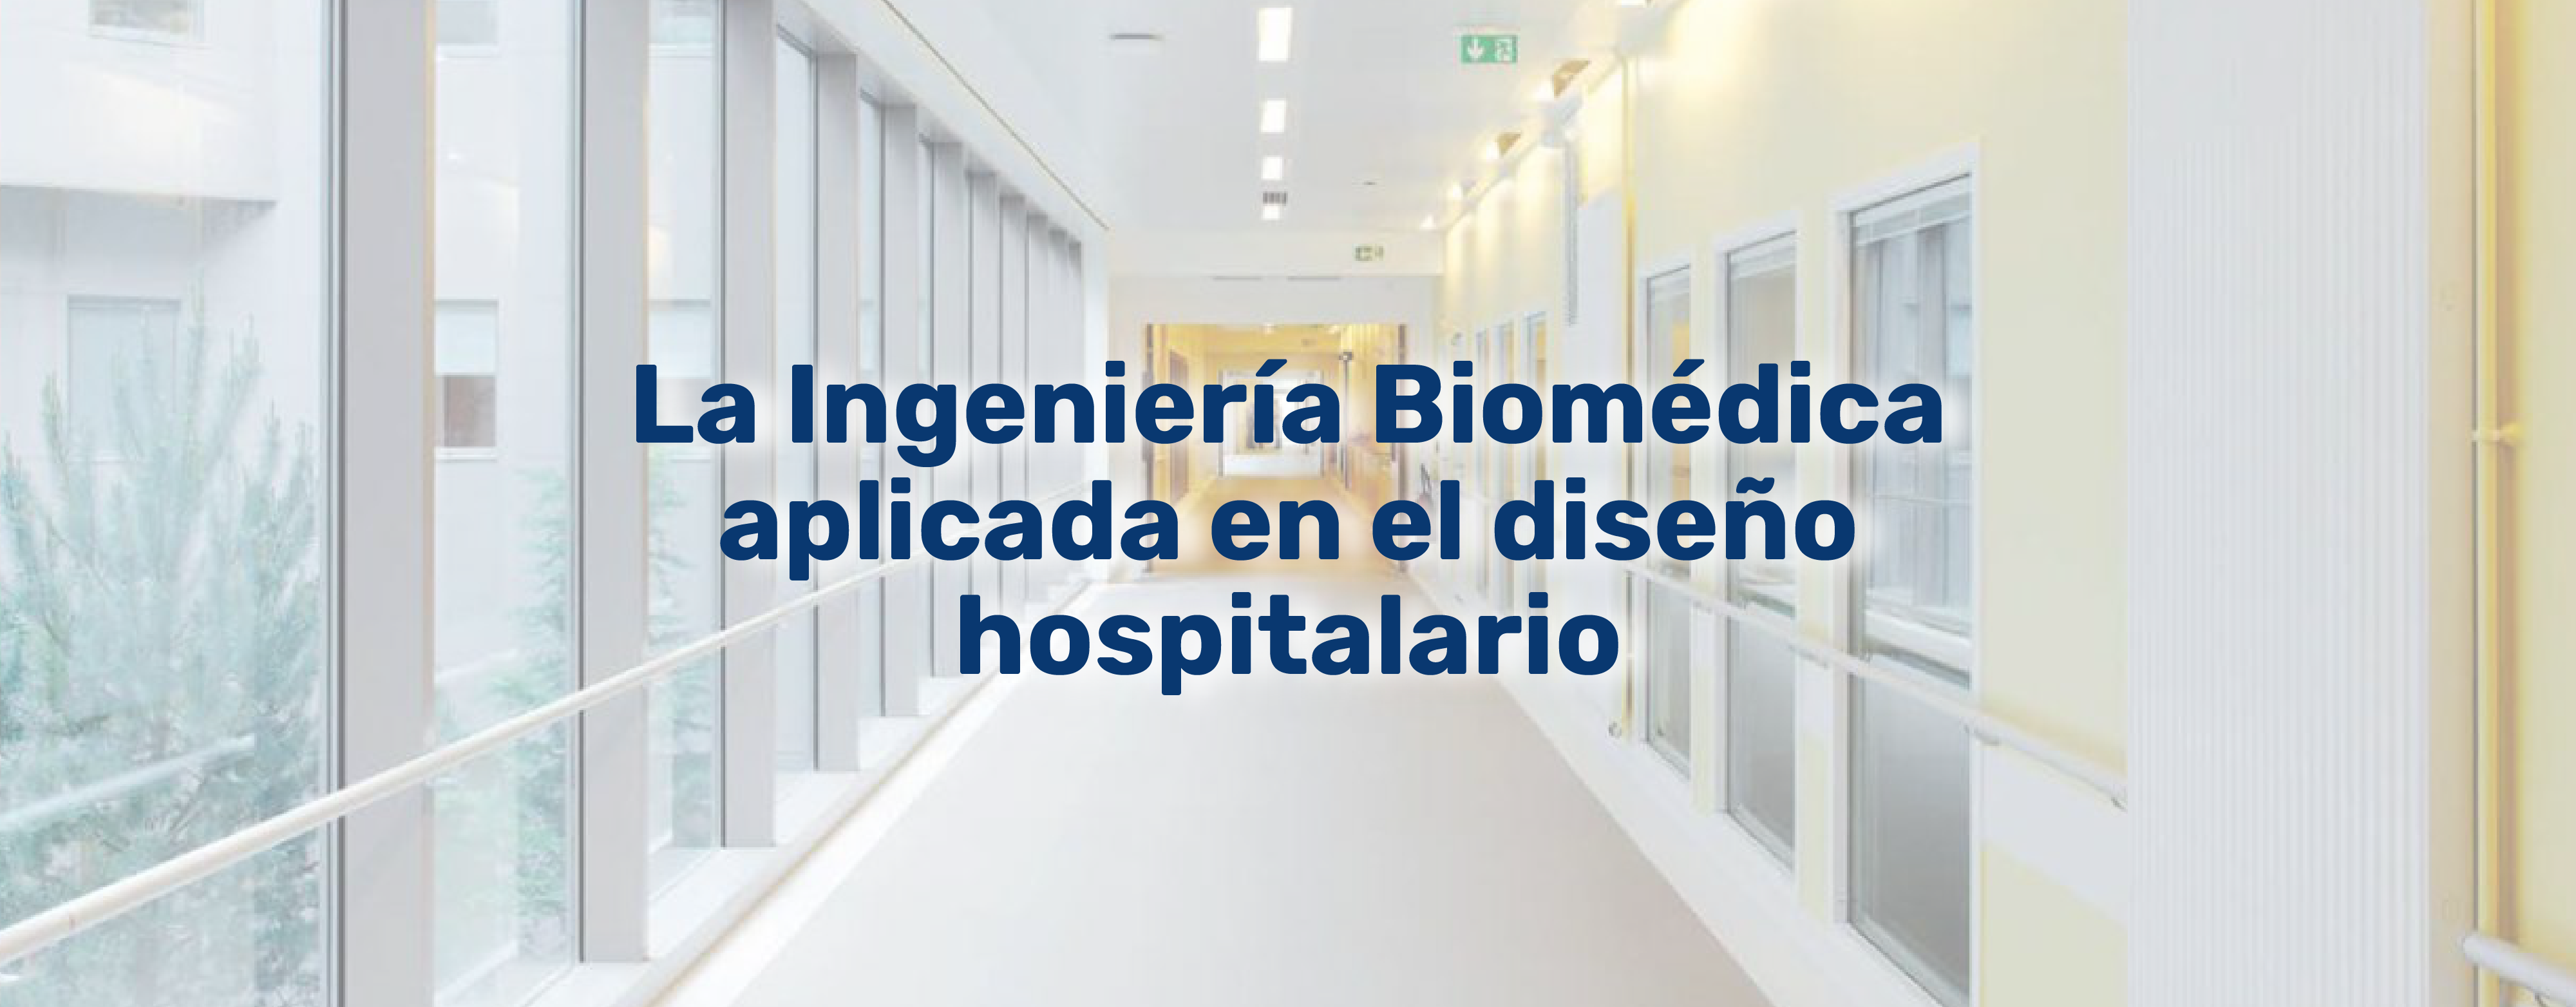 La Ingeniería biomédica aplicada en el diseño hospitalario